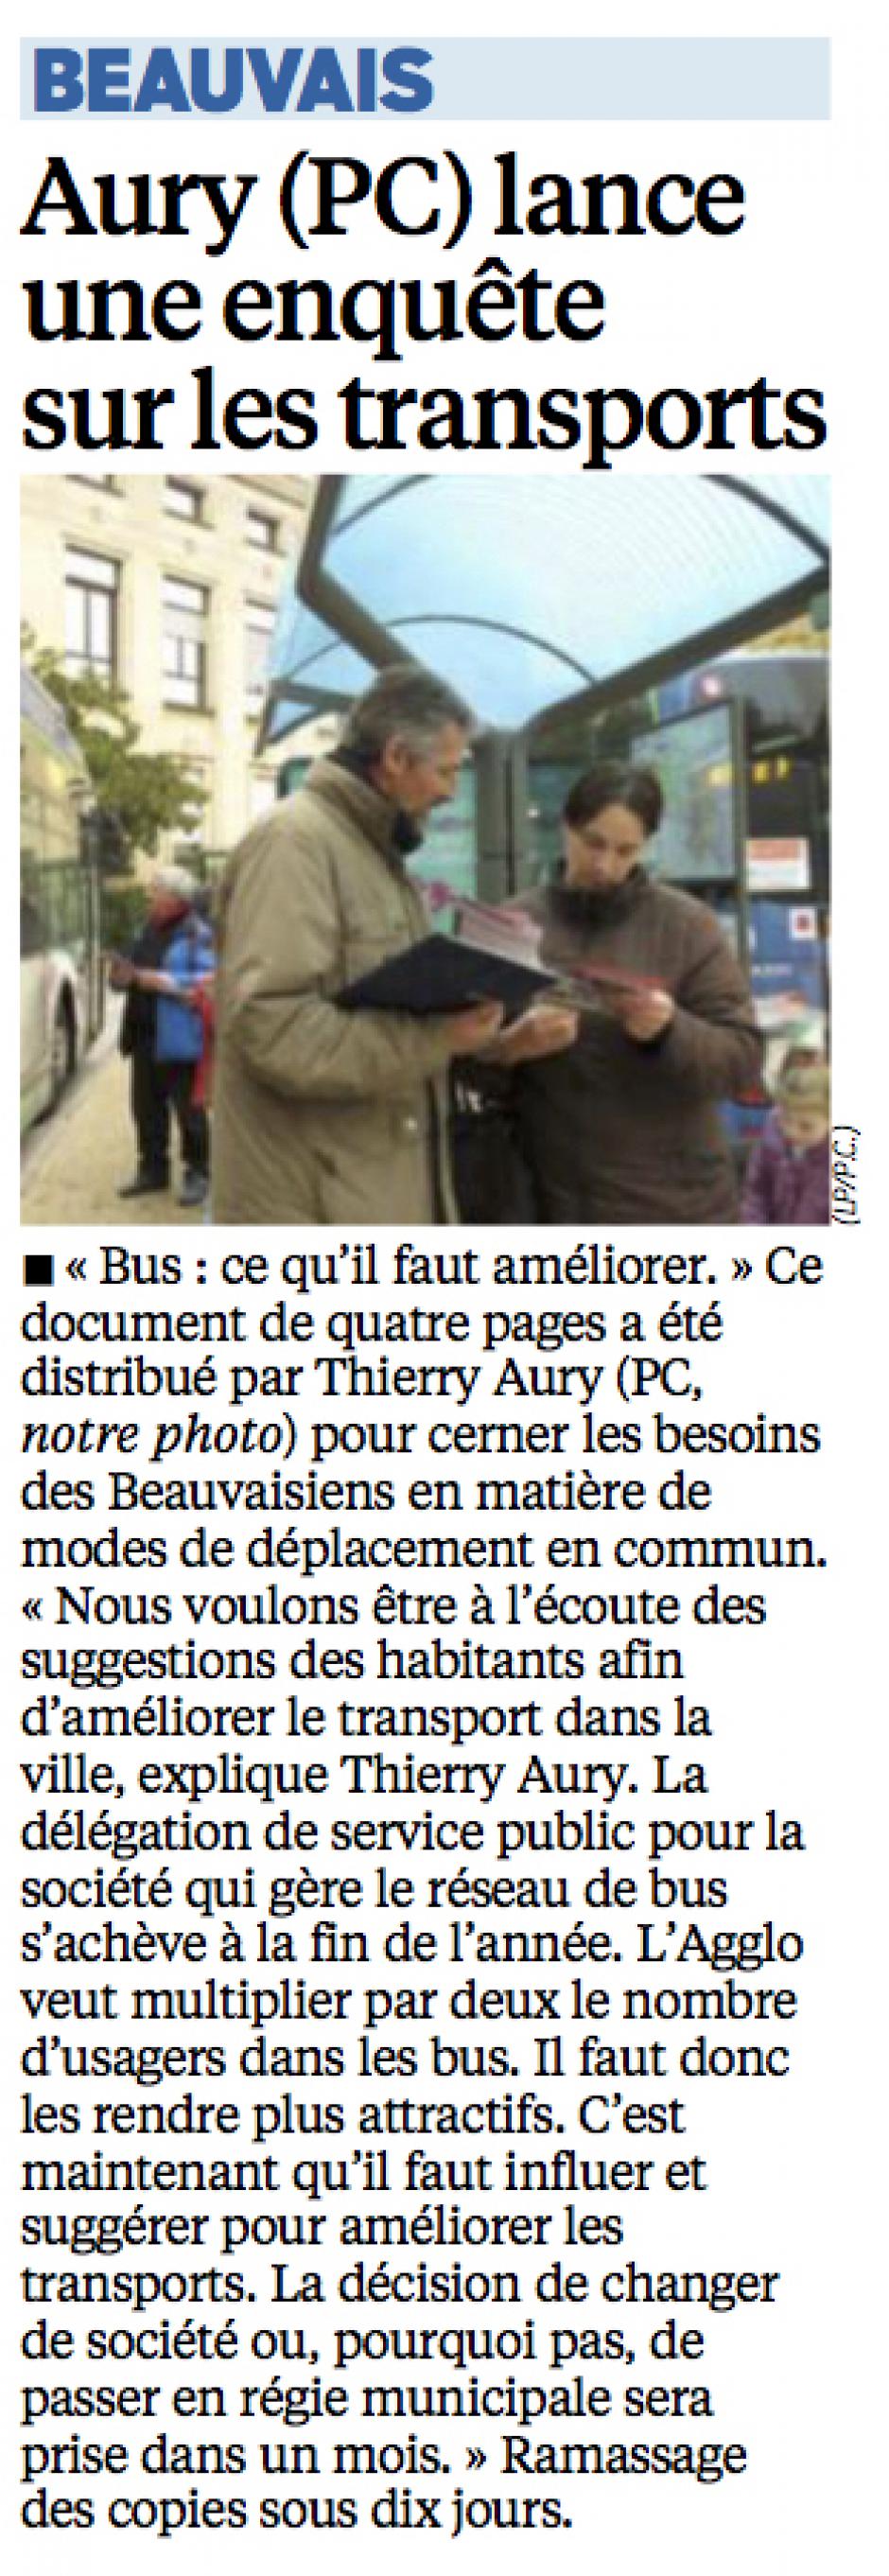 20151021-LeP-Beauvais-Thierry Aury (PC) lance une enquête sur les transports